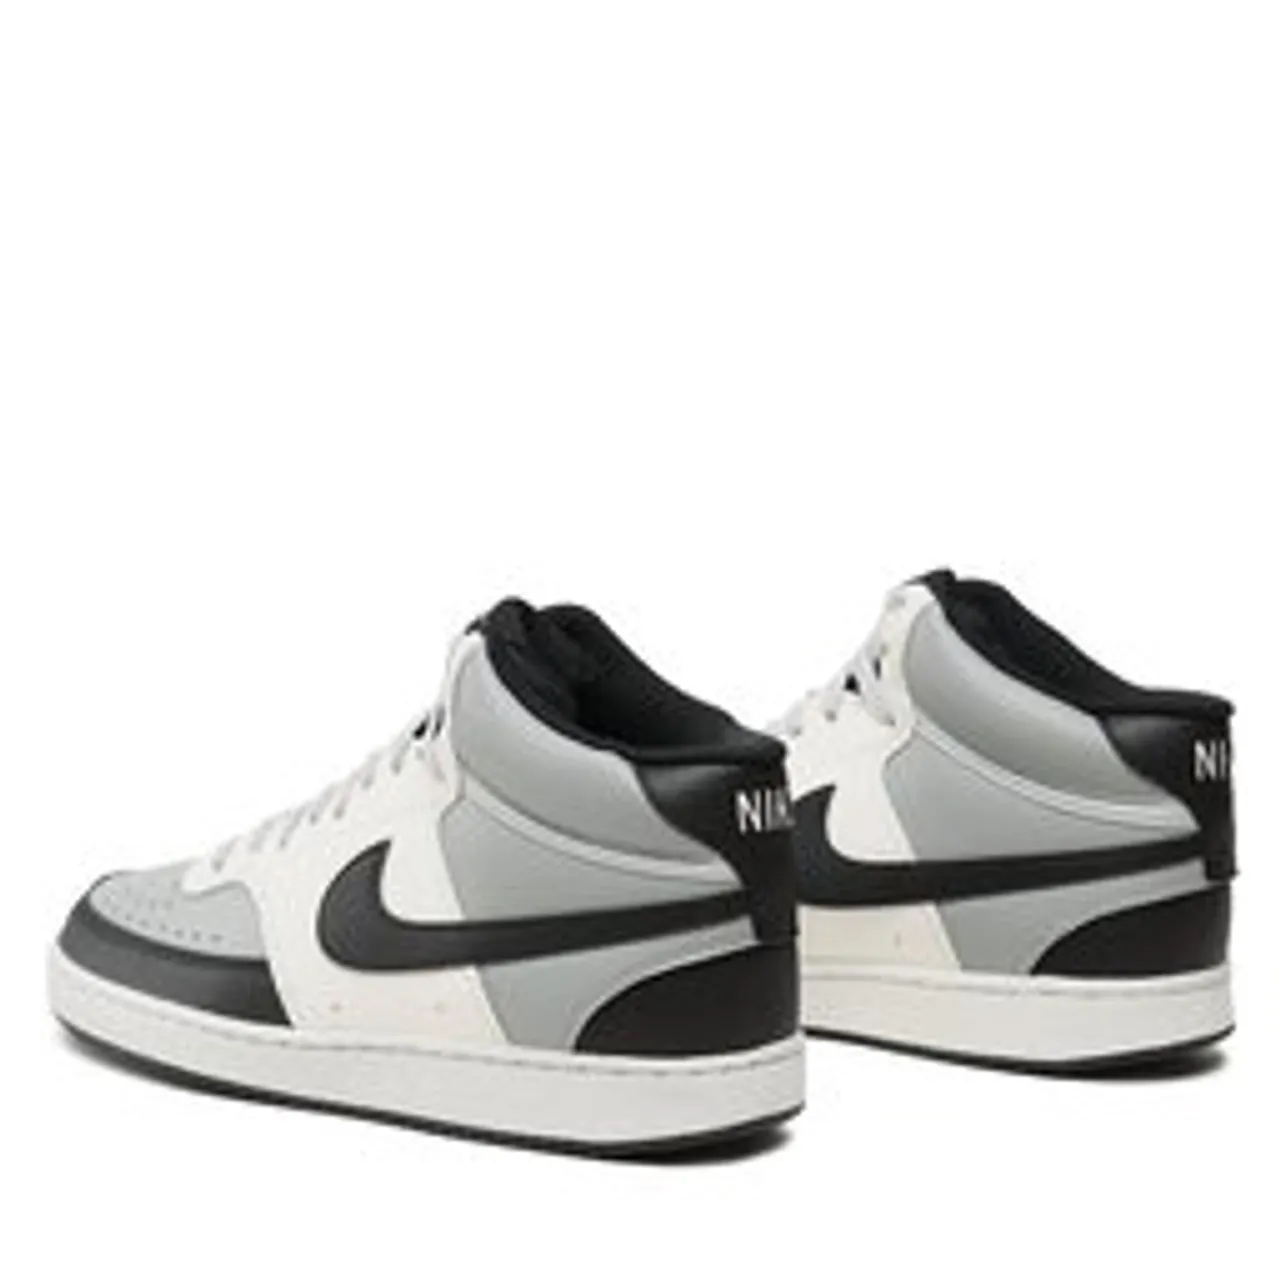 Sneakers Nike Court Vision Mid Nn DN3577 002 Grau